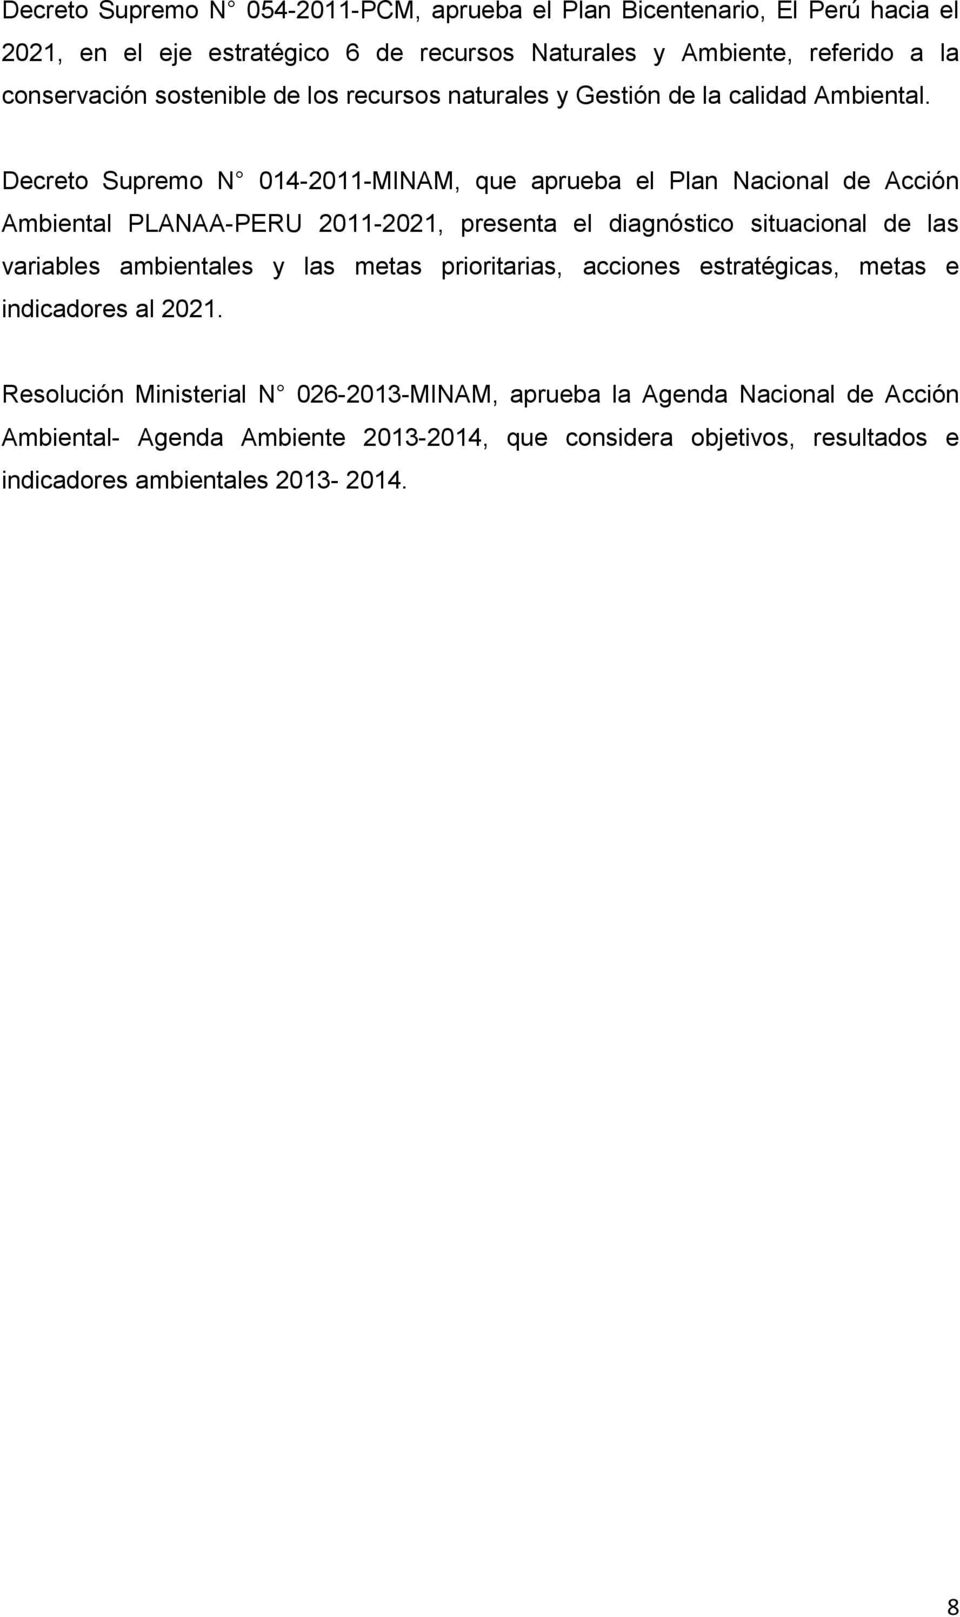 Decreto Supremo N 014-2011-MINAM, que aprueba el Plan Nacional de Acción Ambiental PLANAA-PERU 2011-2021, presenta el diagnóstico situacional de las variables ambientales